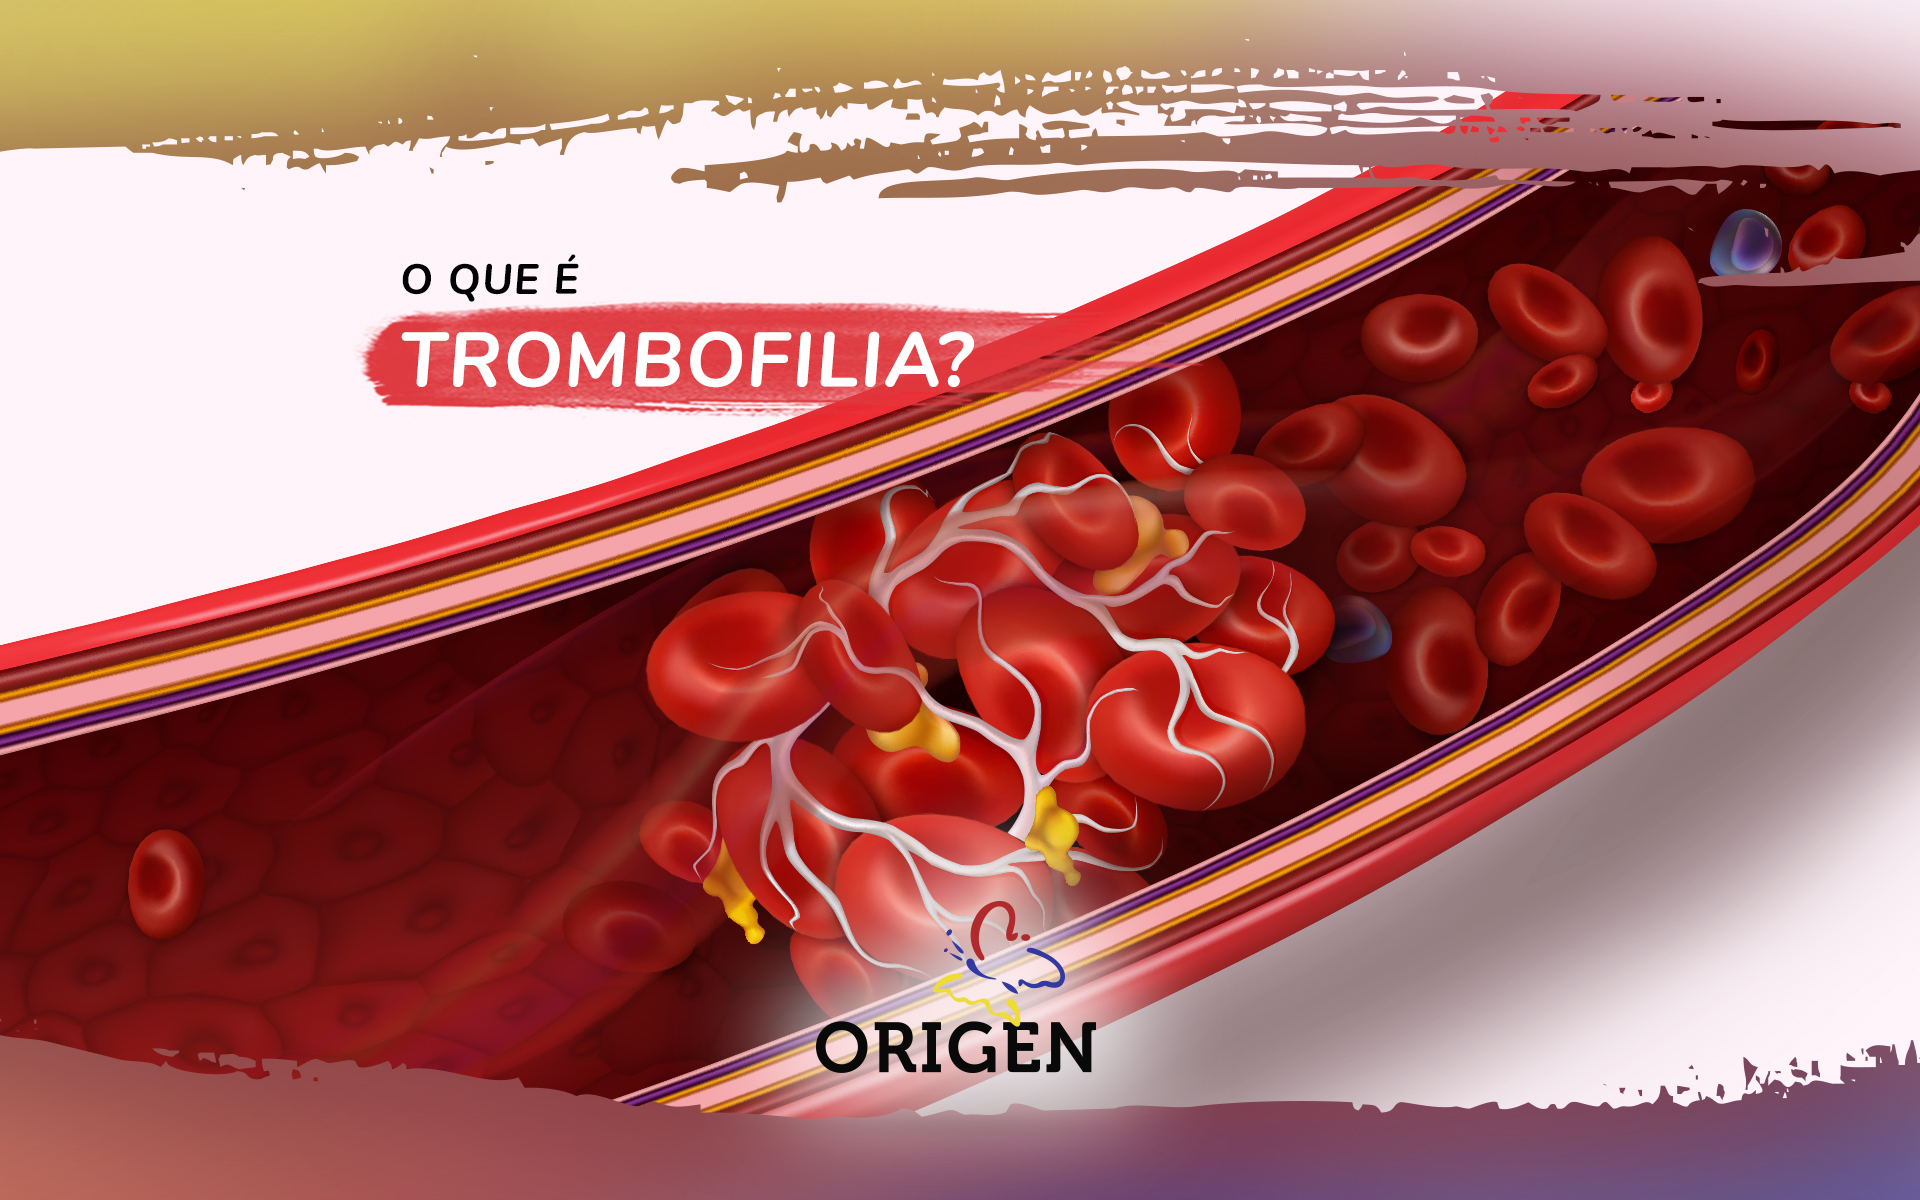 O que é trombofilia?